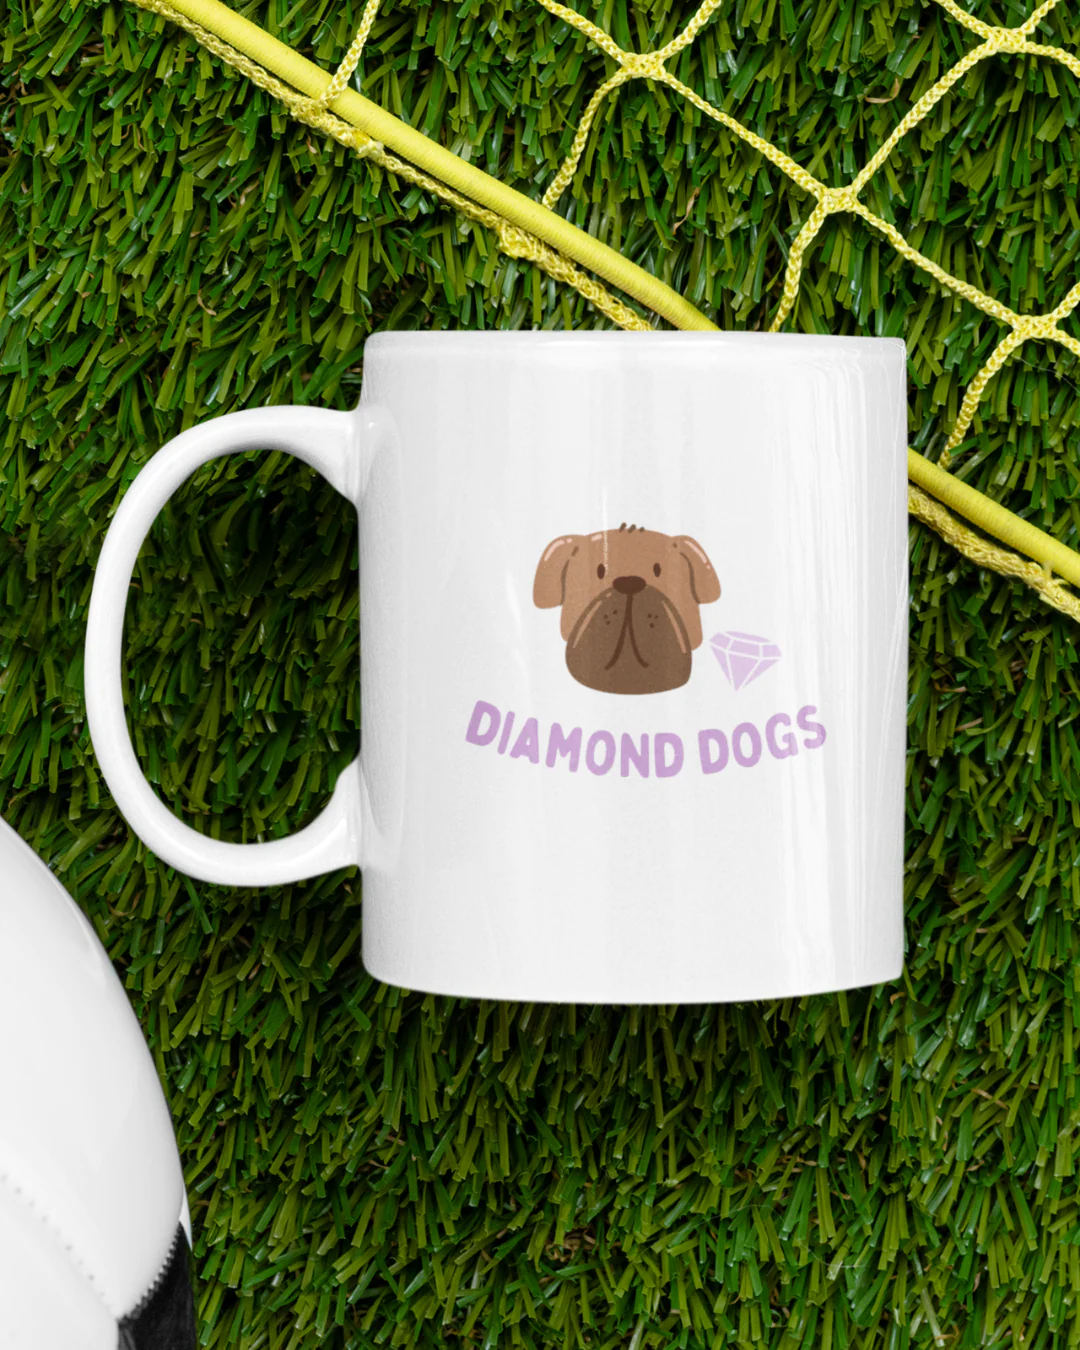 Diamond Dogs Mug - Ted Lasso Inspired Mug - Ted Lasso Diamond Dogs Mug - Ted Lasso Mug